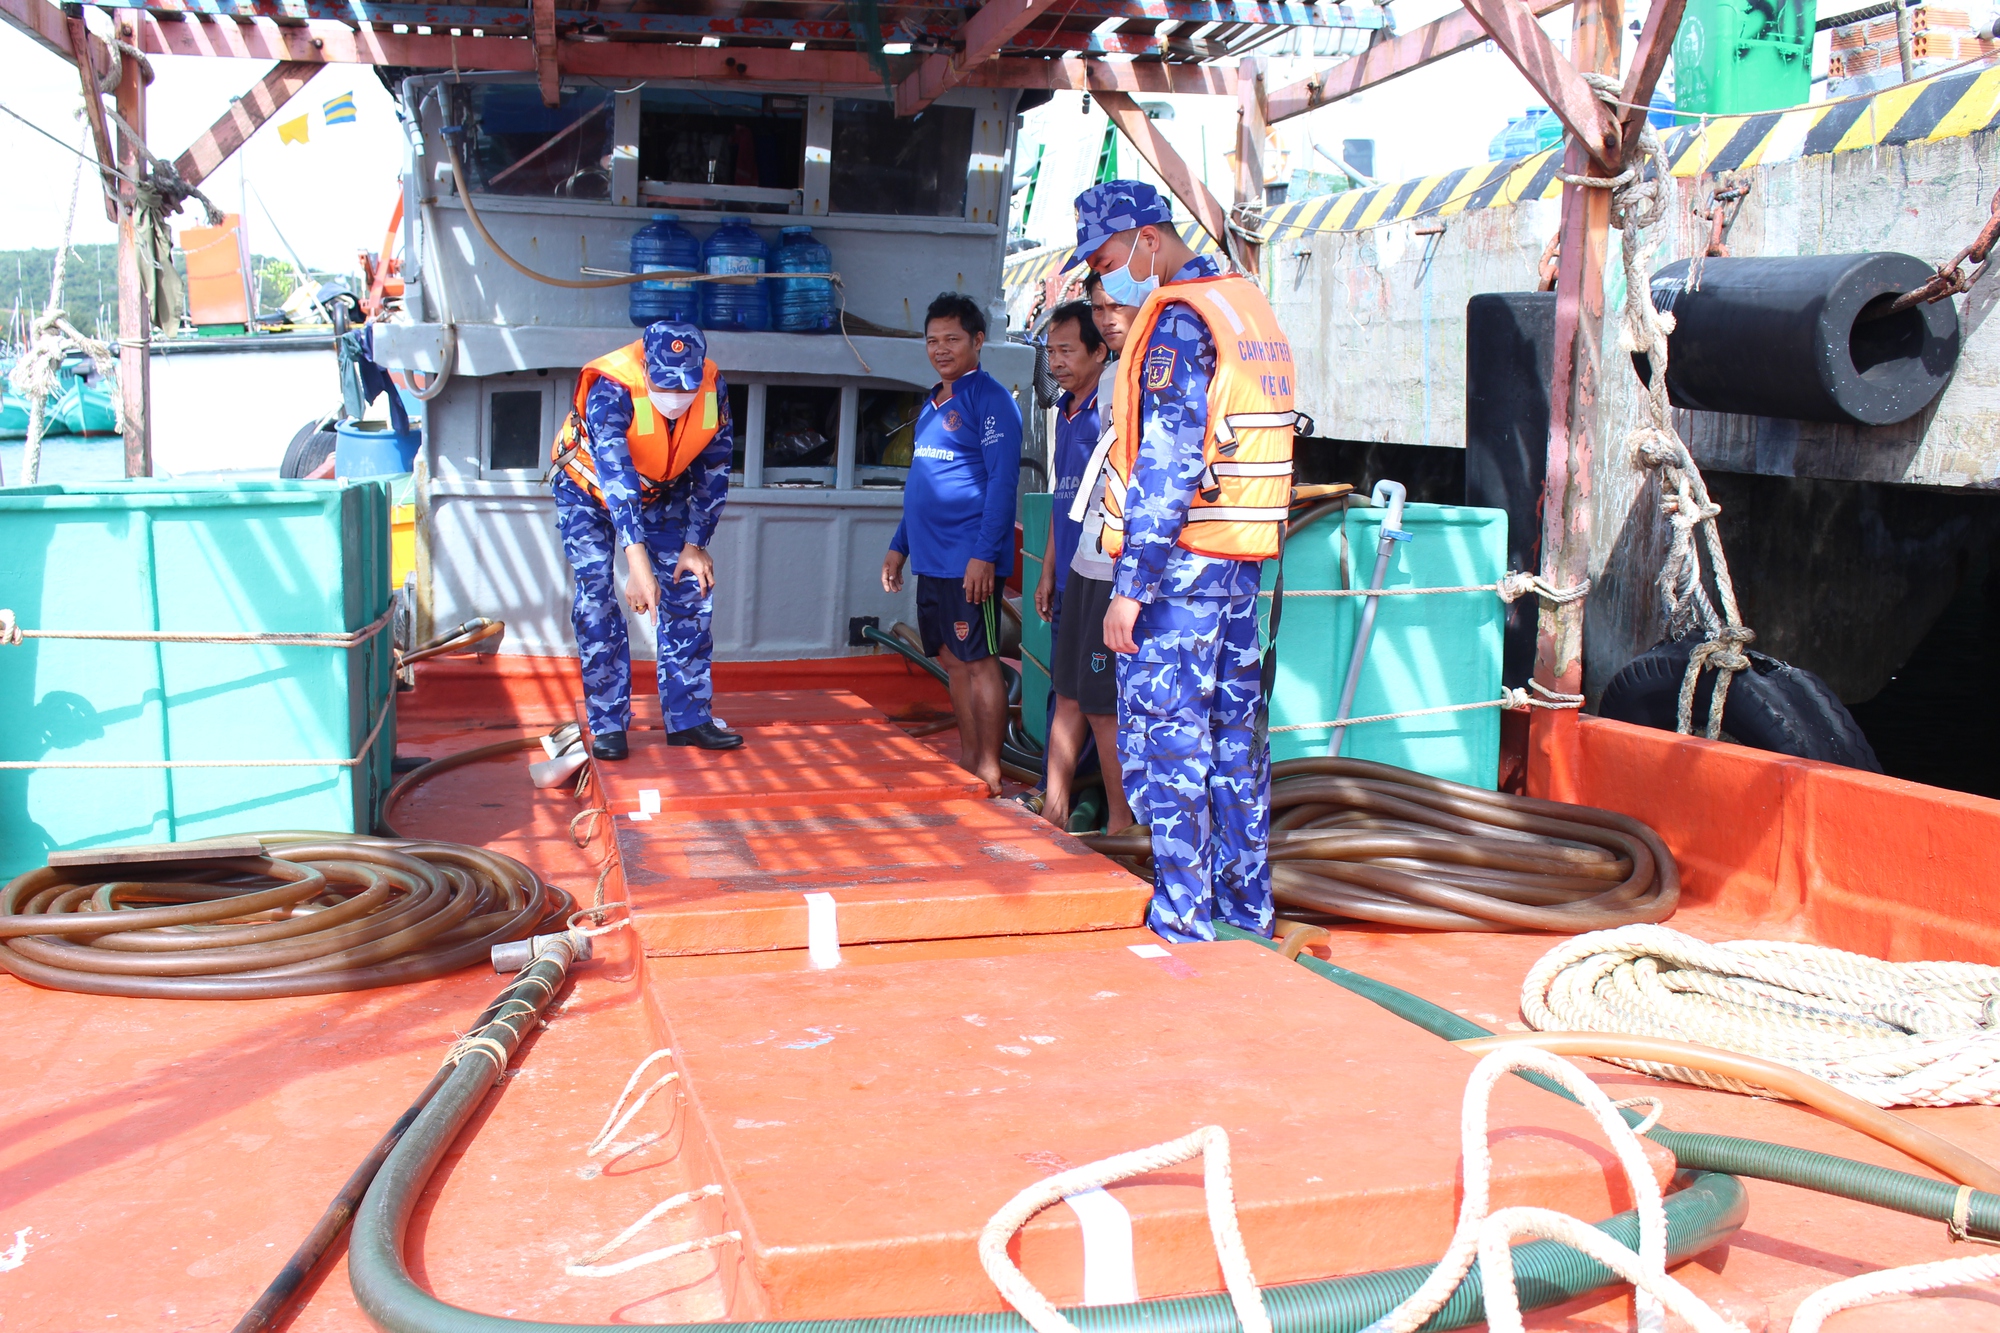 Cảnh sát biển bắt giữ 2 tàu chở 75.000 lít dầu không giấy tờ hợp pháp - Ảnh 4.